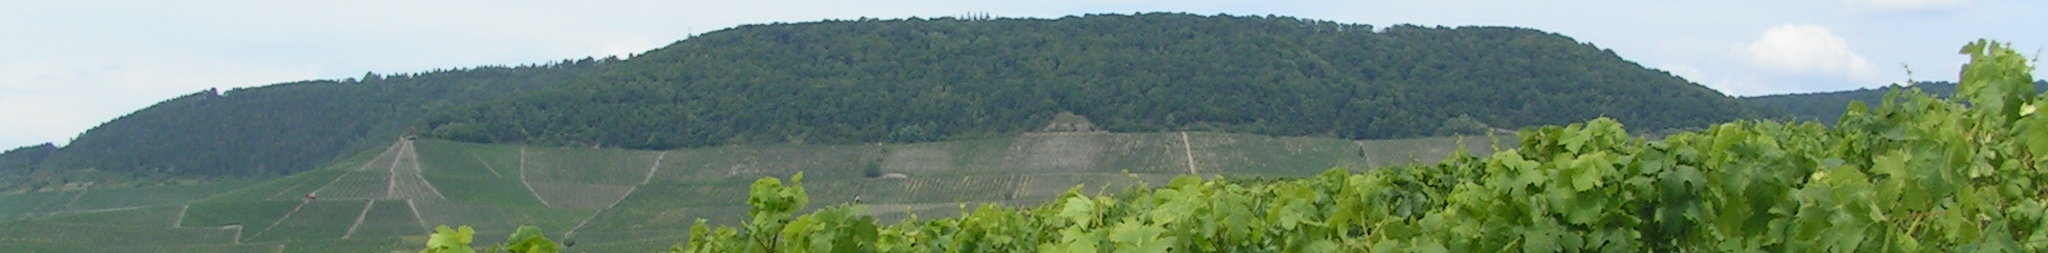 Geo-kologischer Lehrpfad in der Weinlage Kronsberg